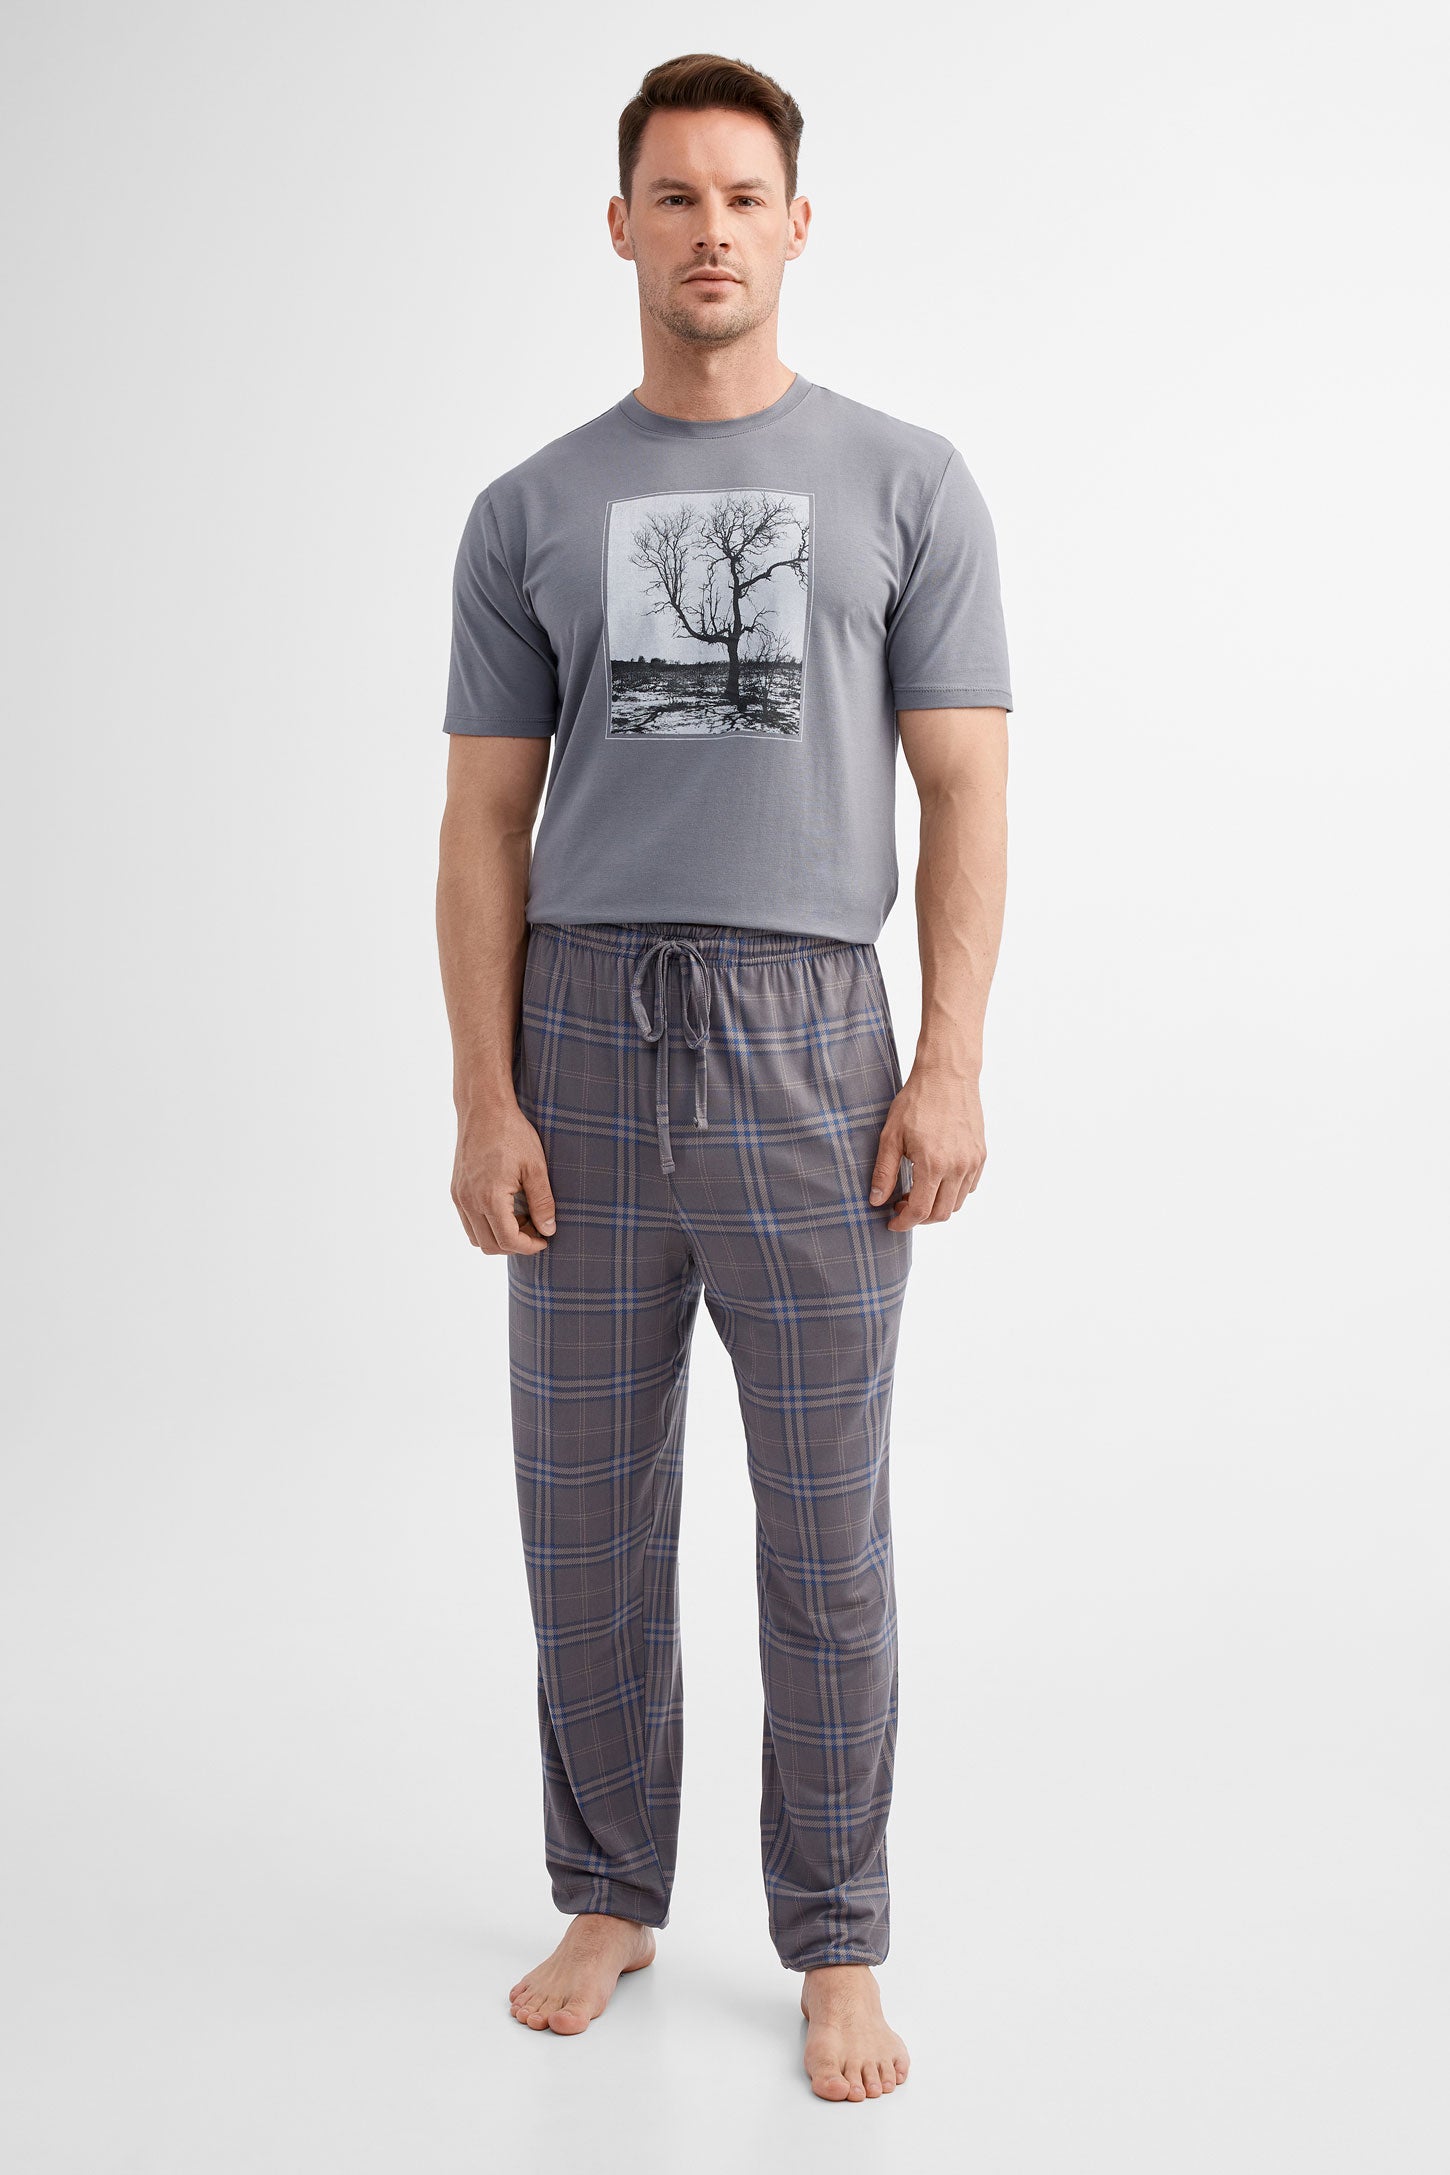 Duos futés, Pantalon pyjama en Moss, 2/50$ - Homme && CHARBON/MULTI